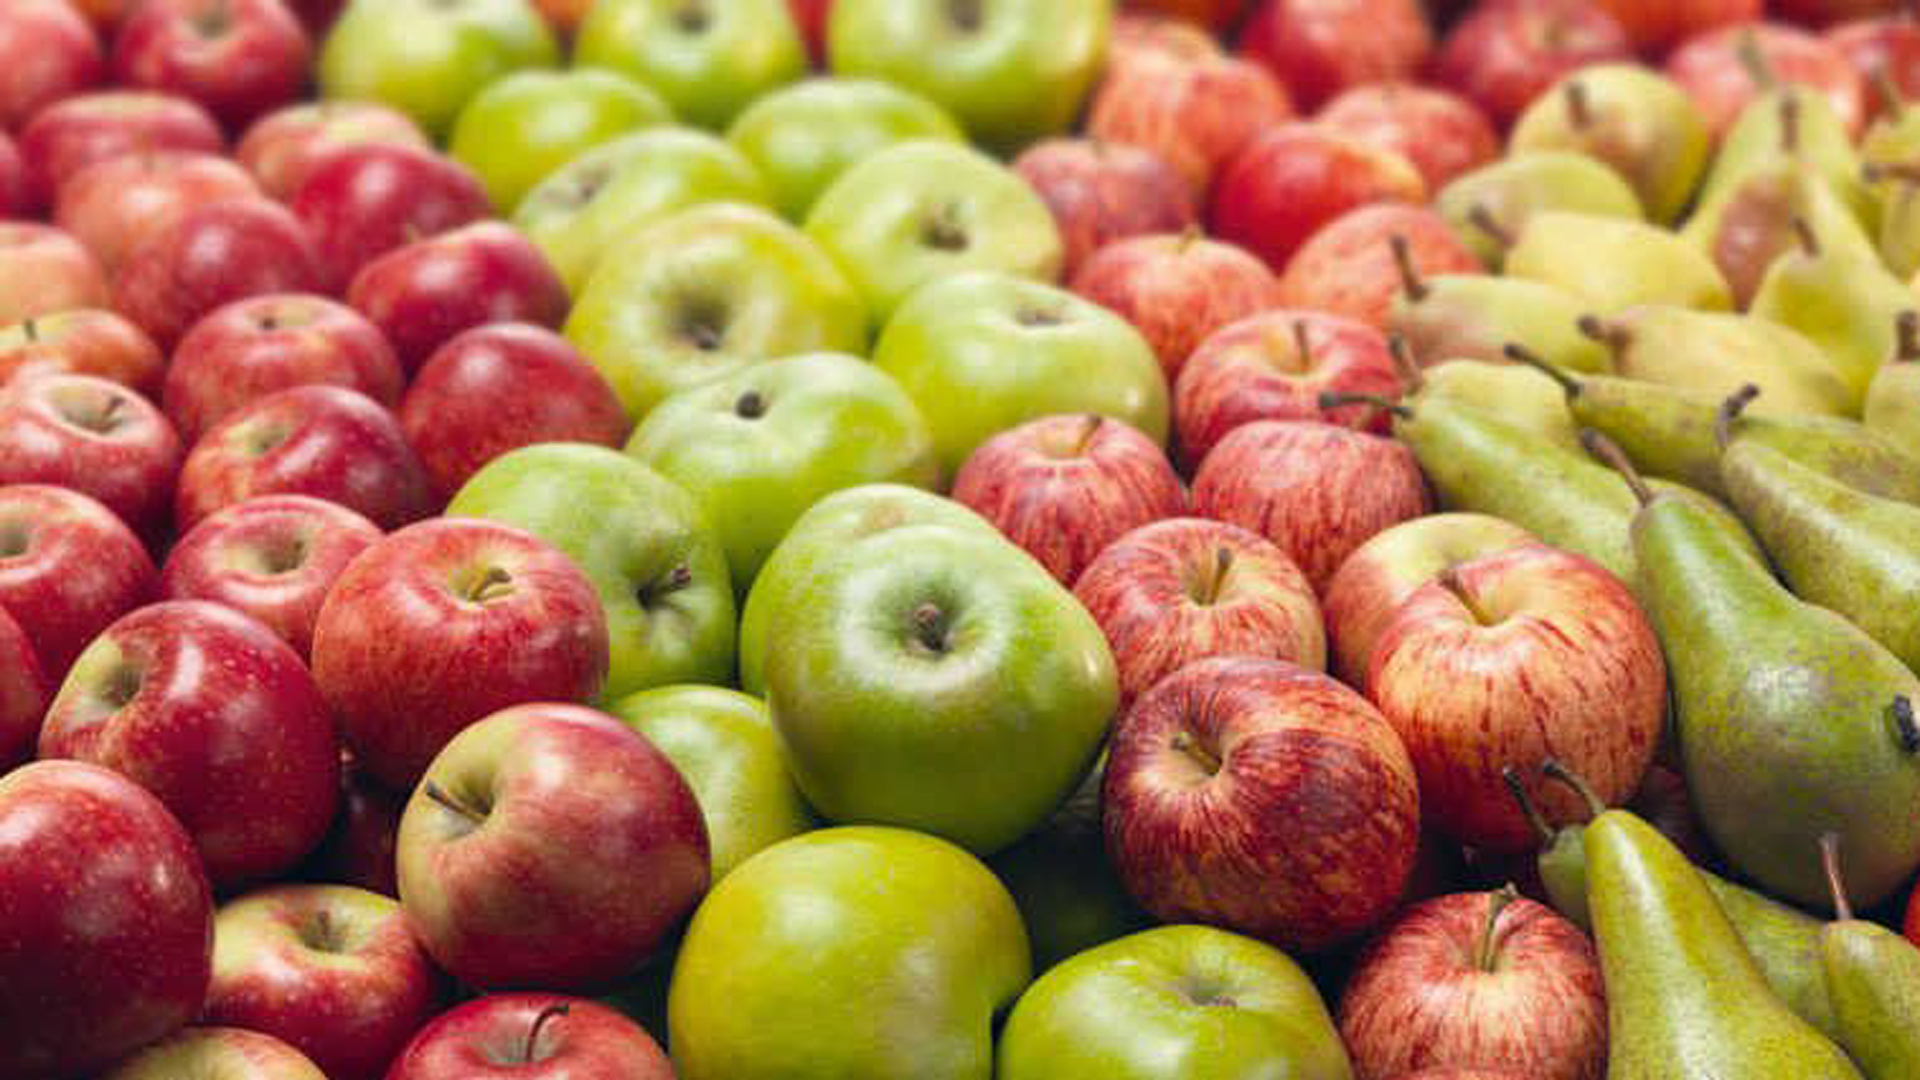 Según la Resolución 2, desde el gobierno de Brasil levantaron la suspensión para el ingreso de peras y manzanas provenientes de la Argentina.